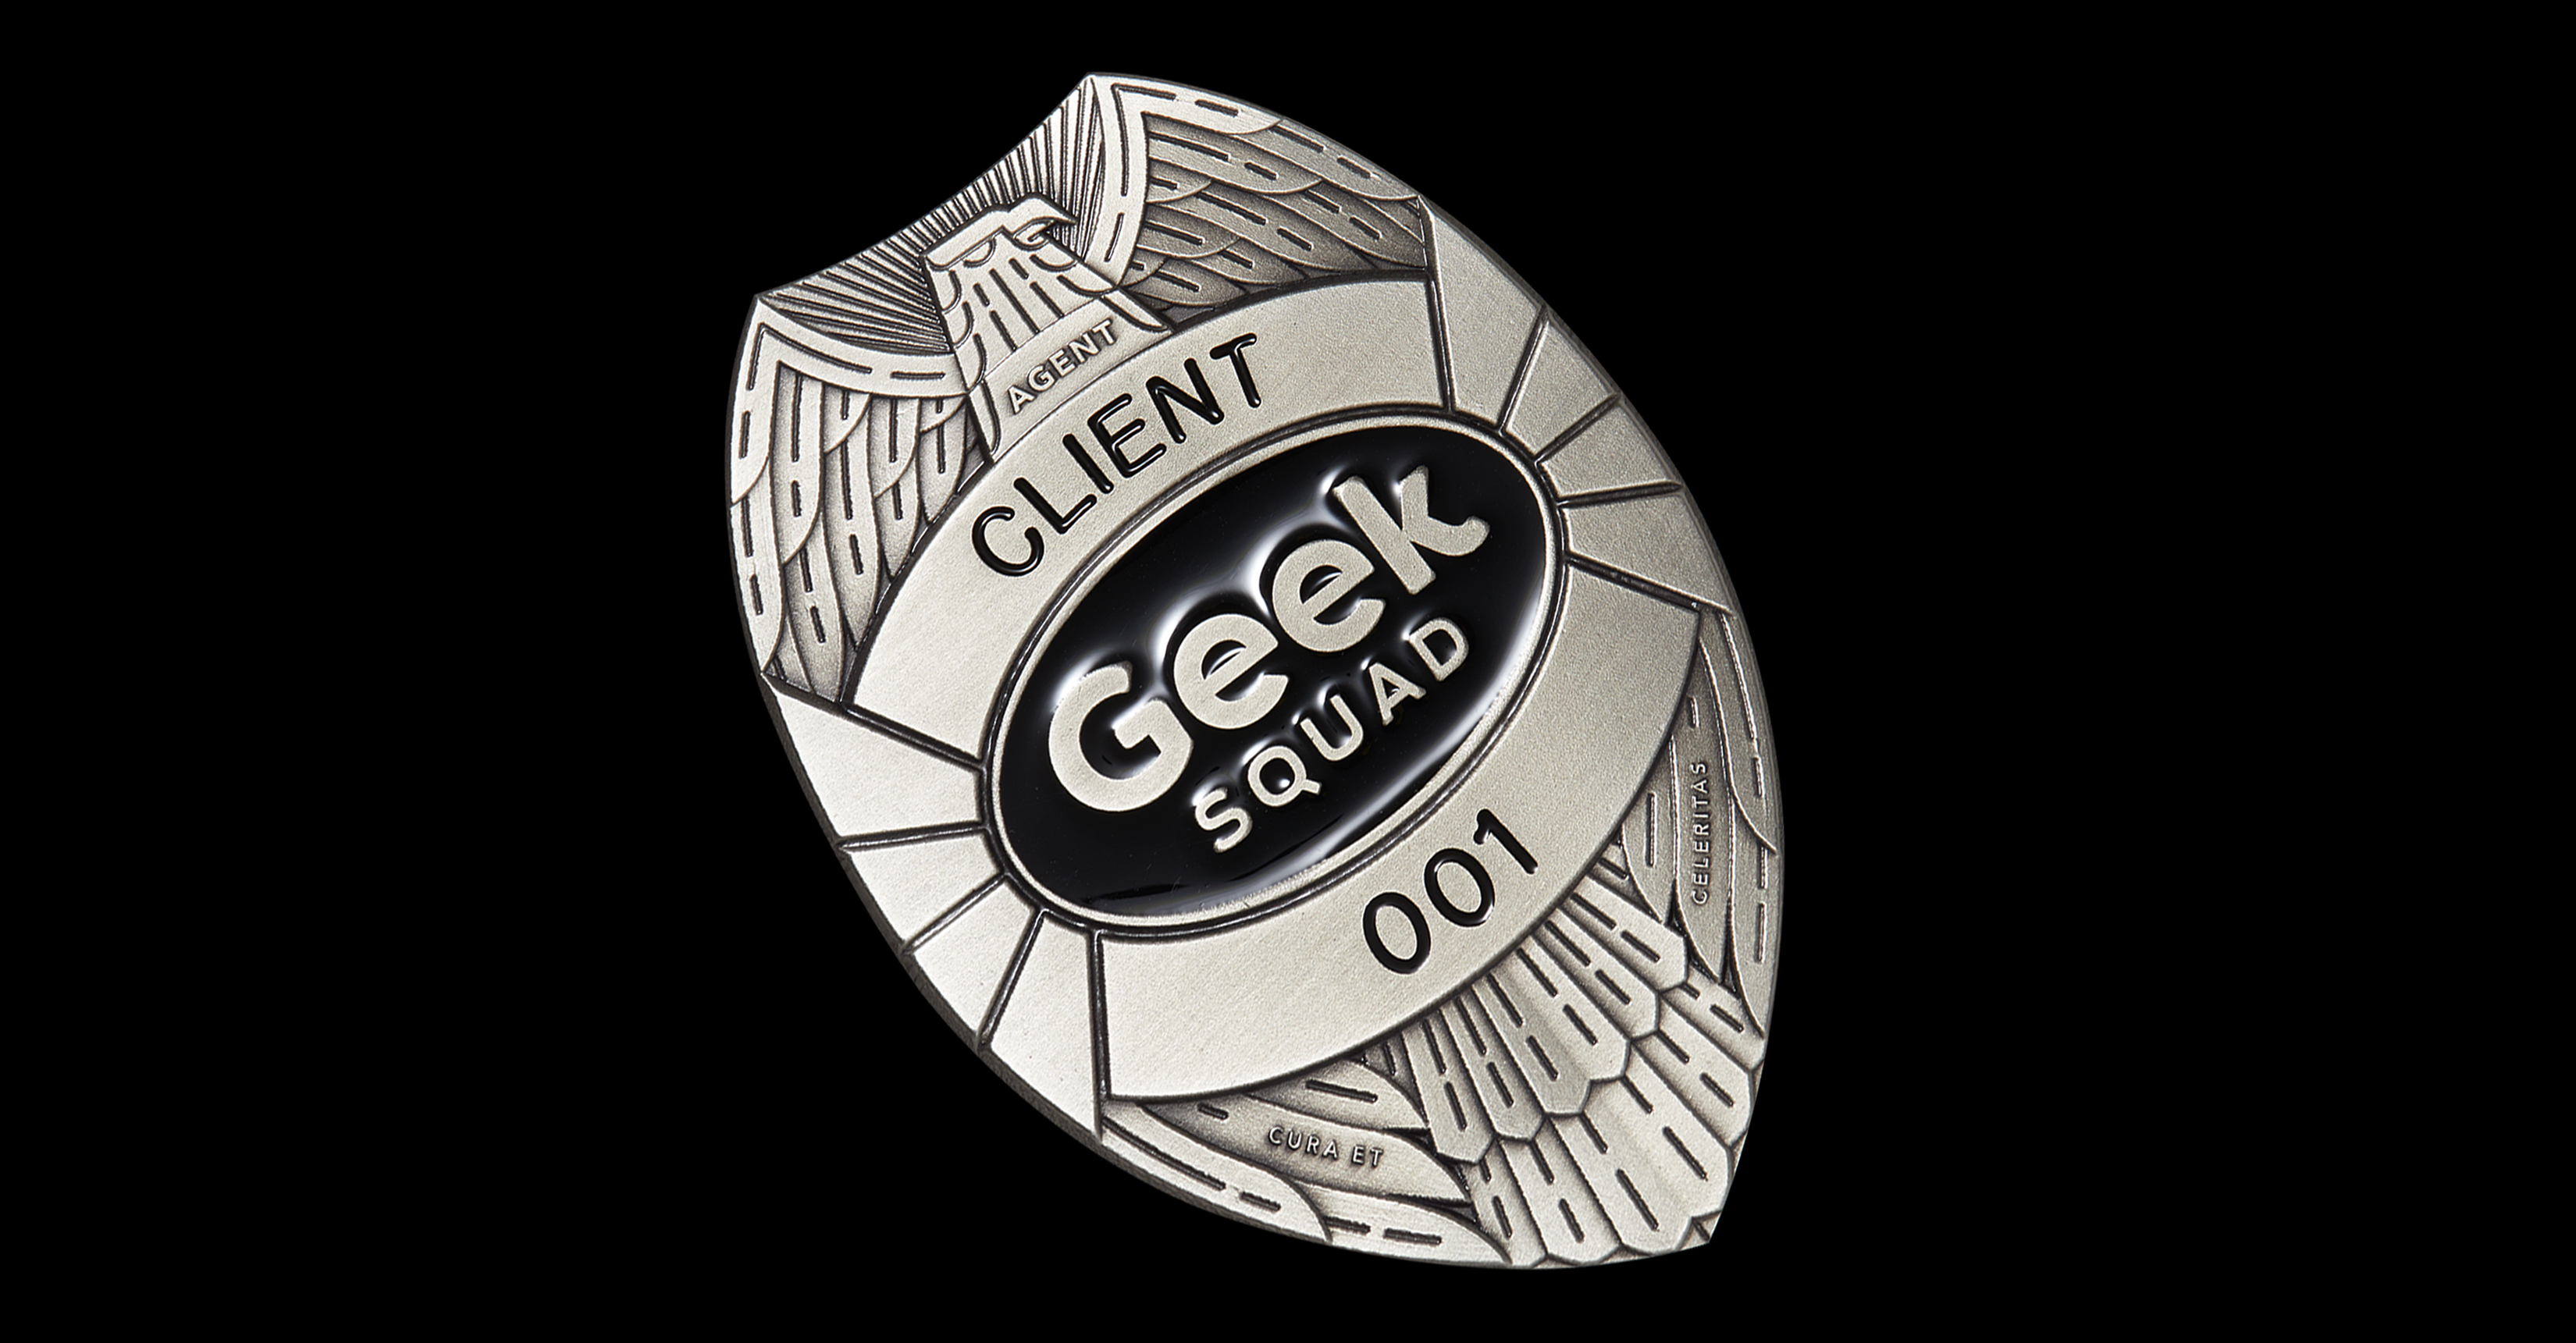 old_new_geek_squad_badges_051919_black